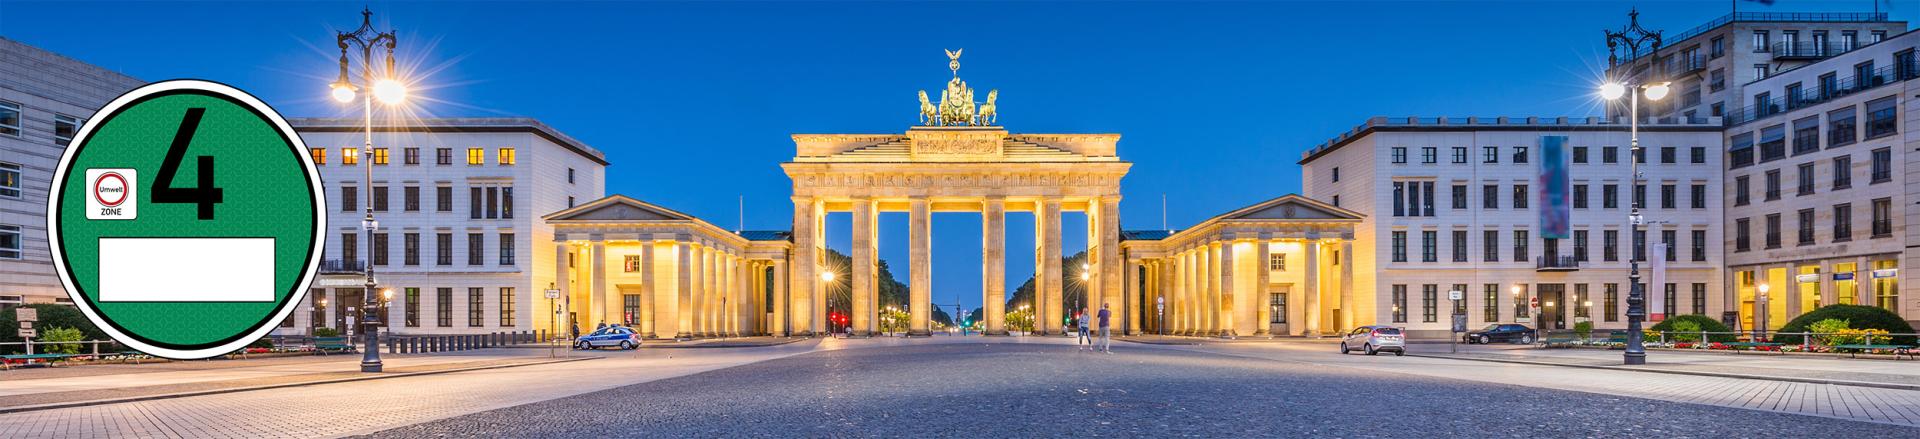 Reizen naar of door Duitsland? Vergeet de Duitse Milieusticker niet